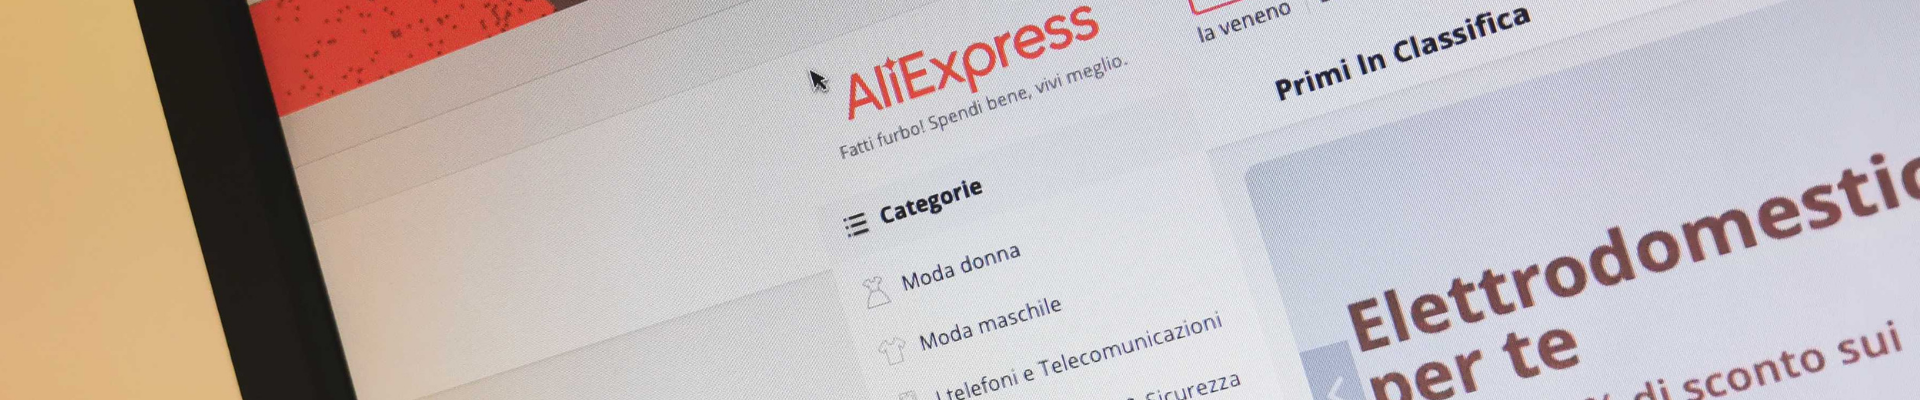 Aliexpress Online Shopping